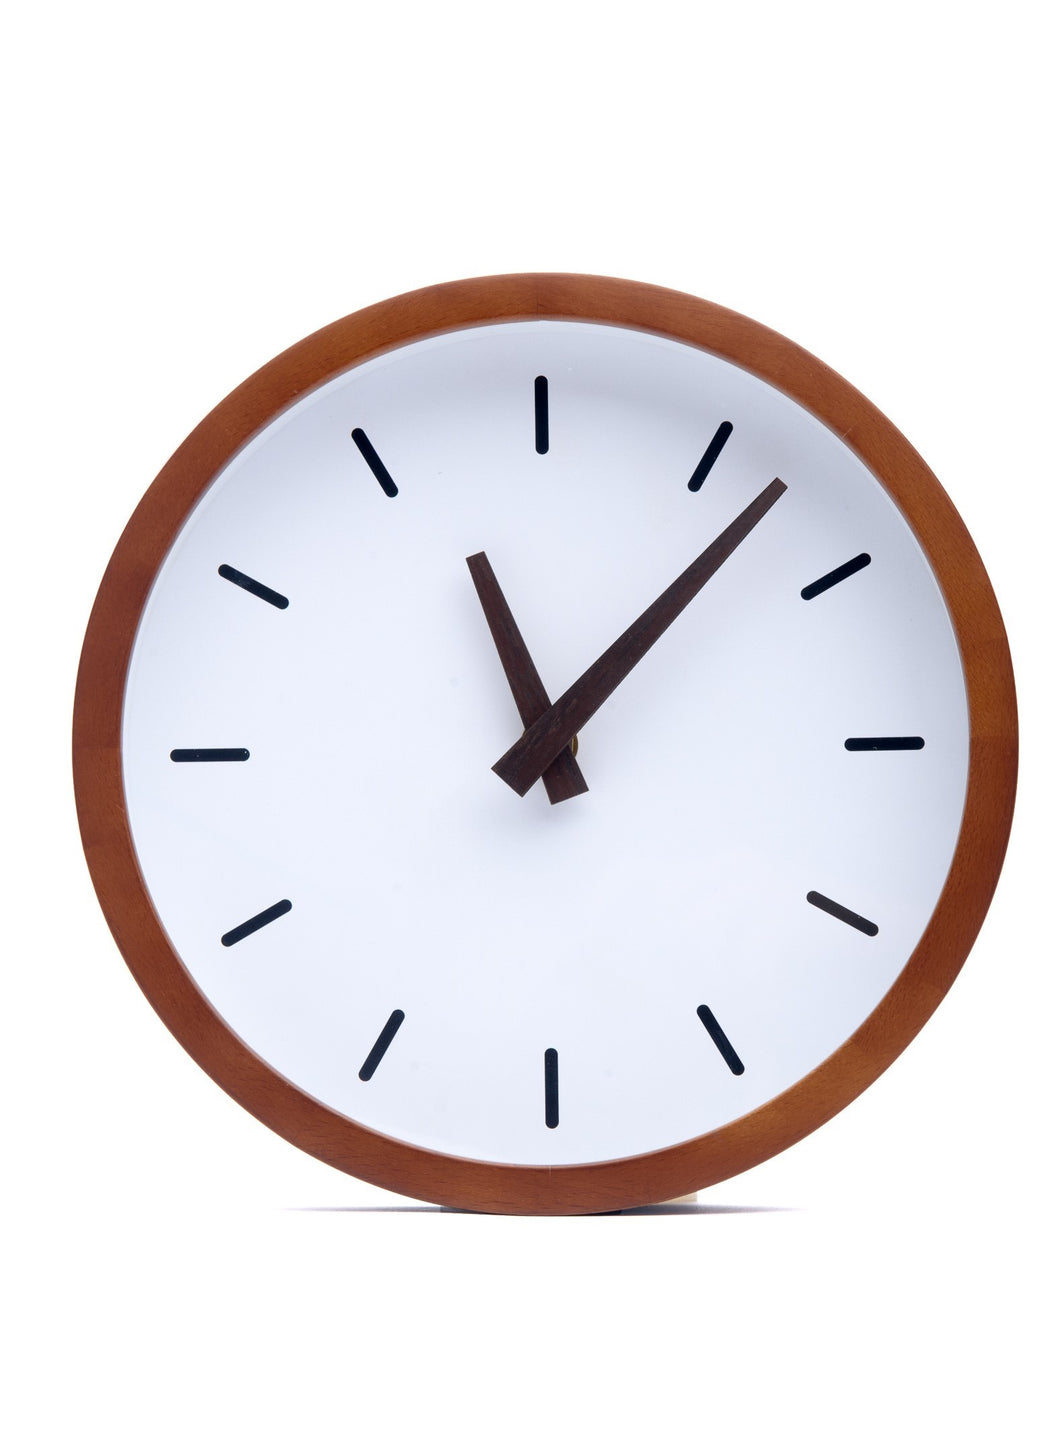 Driini Modern Wood Analog Wall Clock - (12